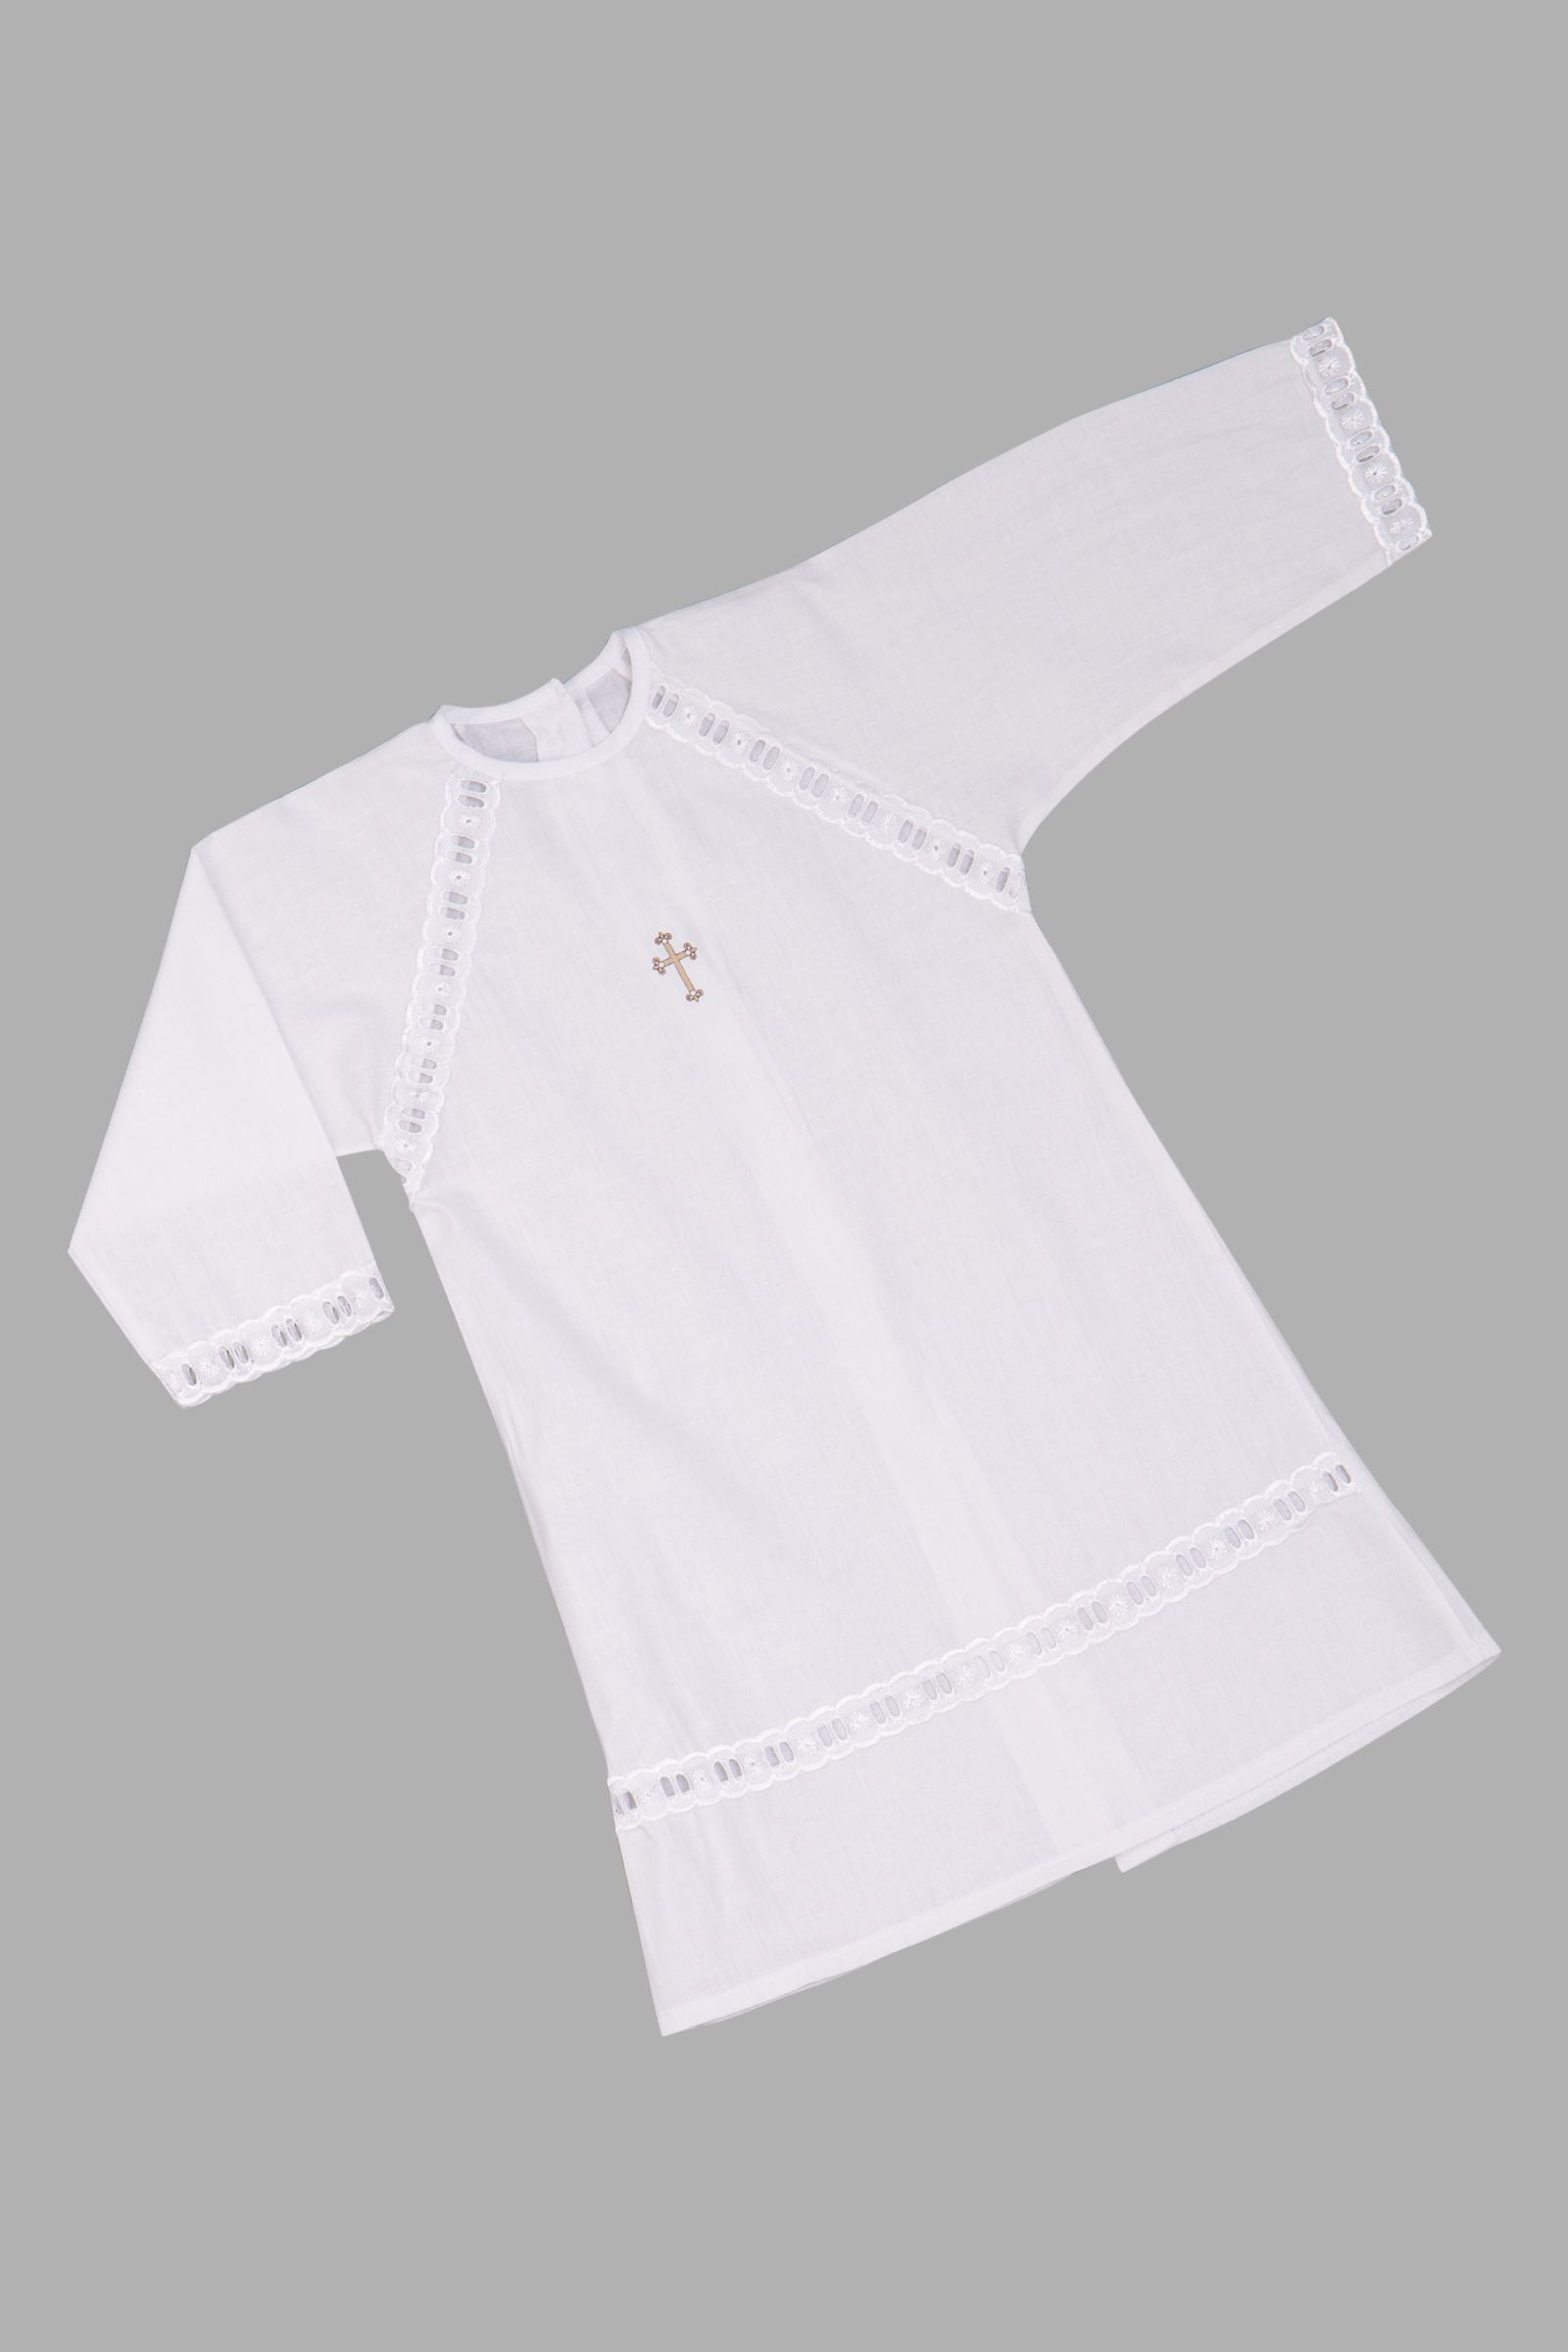 Рубашечка для крещения-РБ14-3058 оптом от производителя детской одежды 'Алёна'